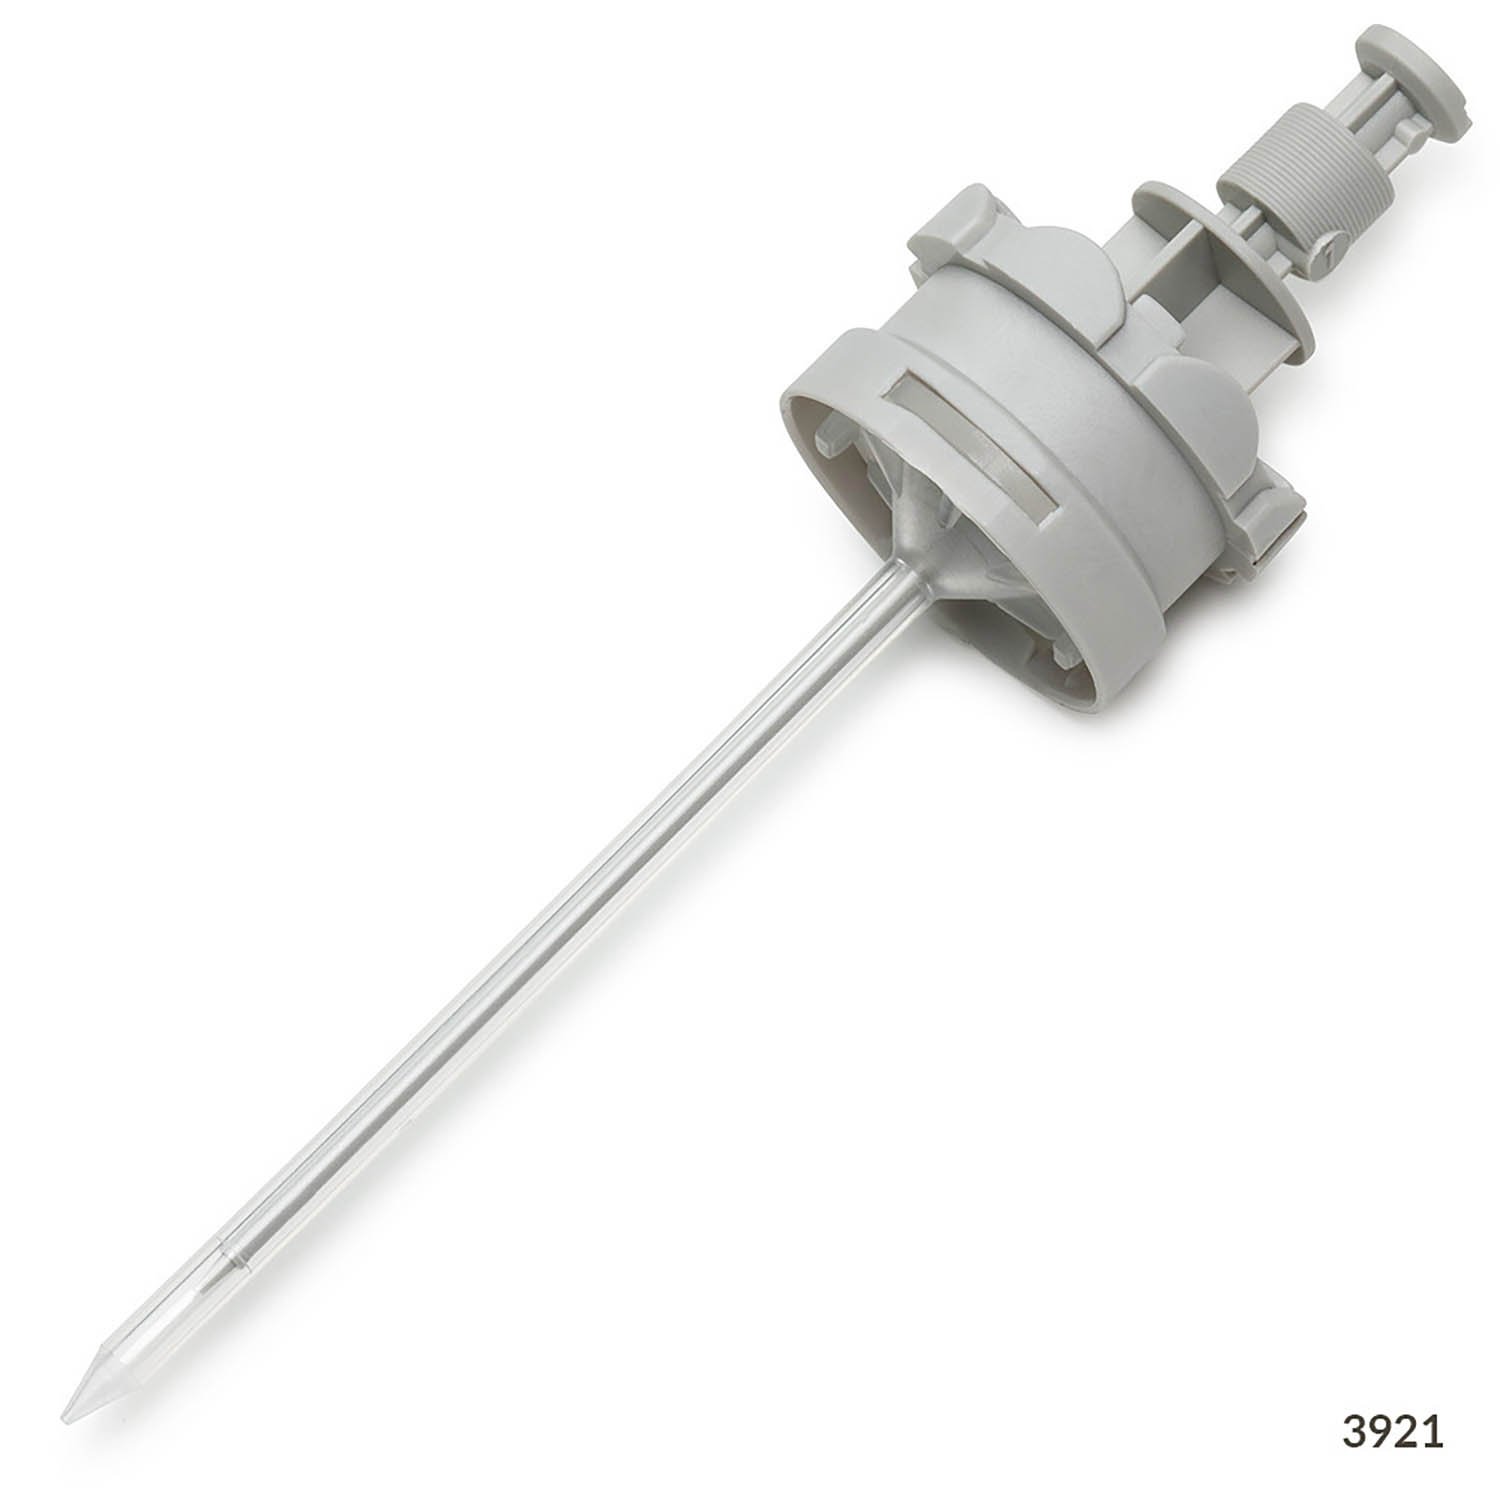 RV-Pette PRO Dispenser Syringe Tip for Repeat Volume Pipettors - Non-Sterile, 0.1mL, Box of 100